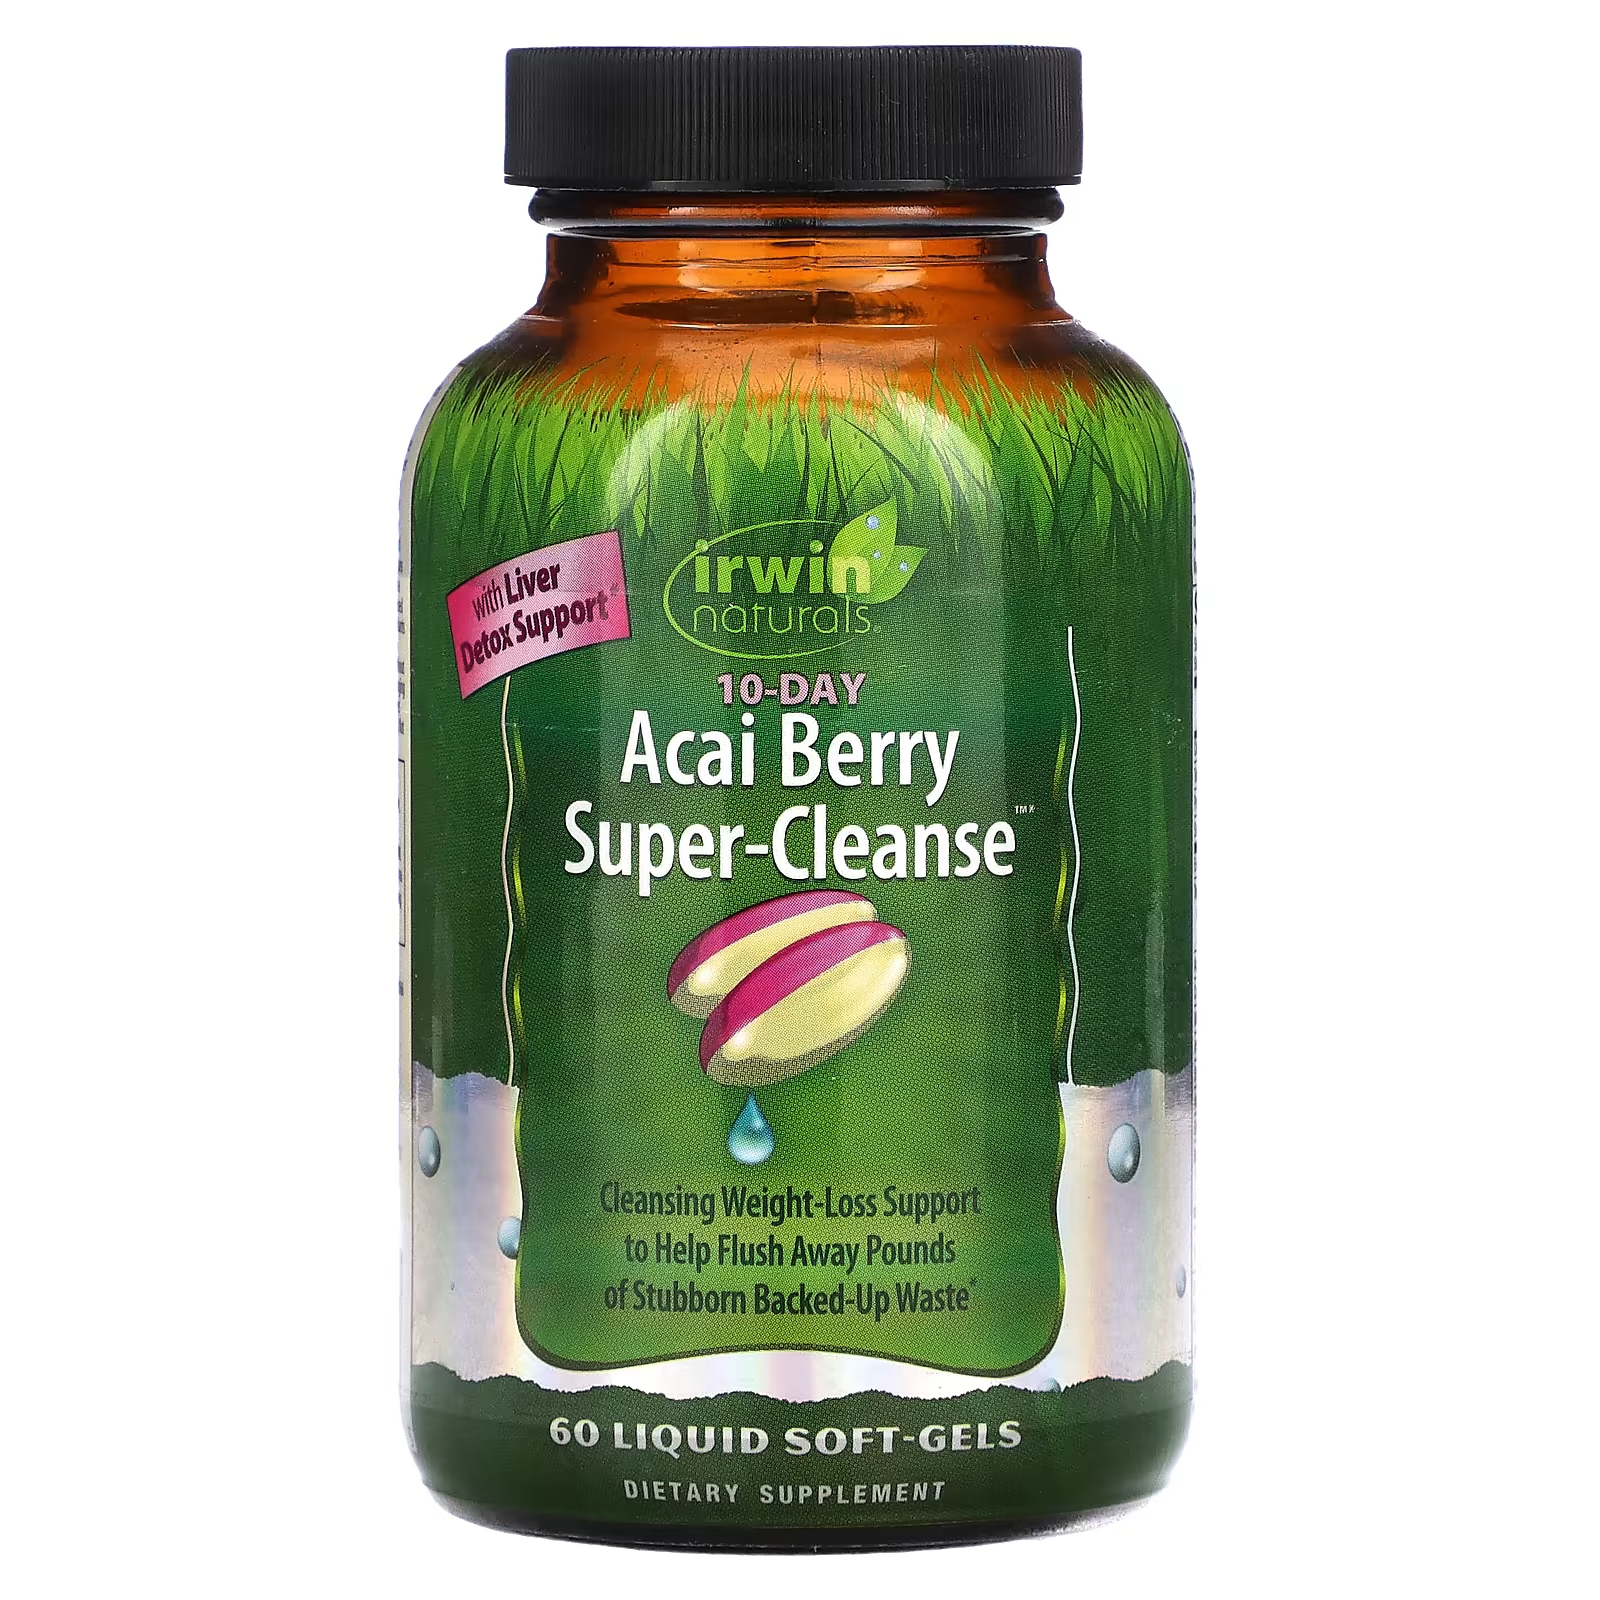 Пищевая добавка Irwin Naturals Acai Berry Super-Cleanse, 60 жидких капсул пищевая добавка irwin naturals inflamma less с экстрактом турмацина 60 жидких капсул